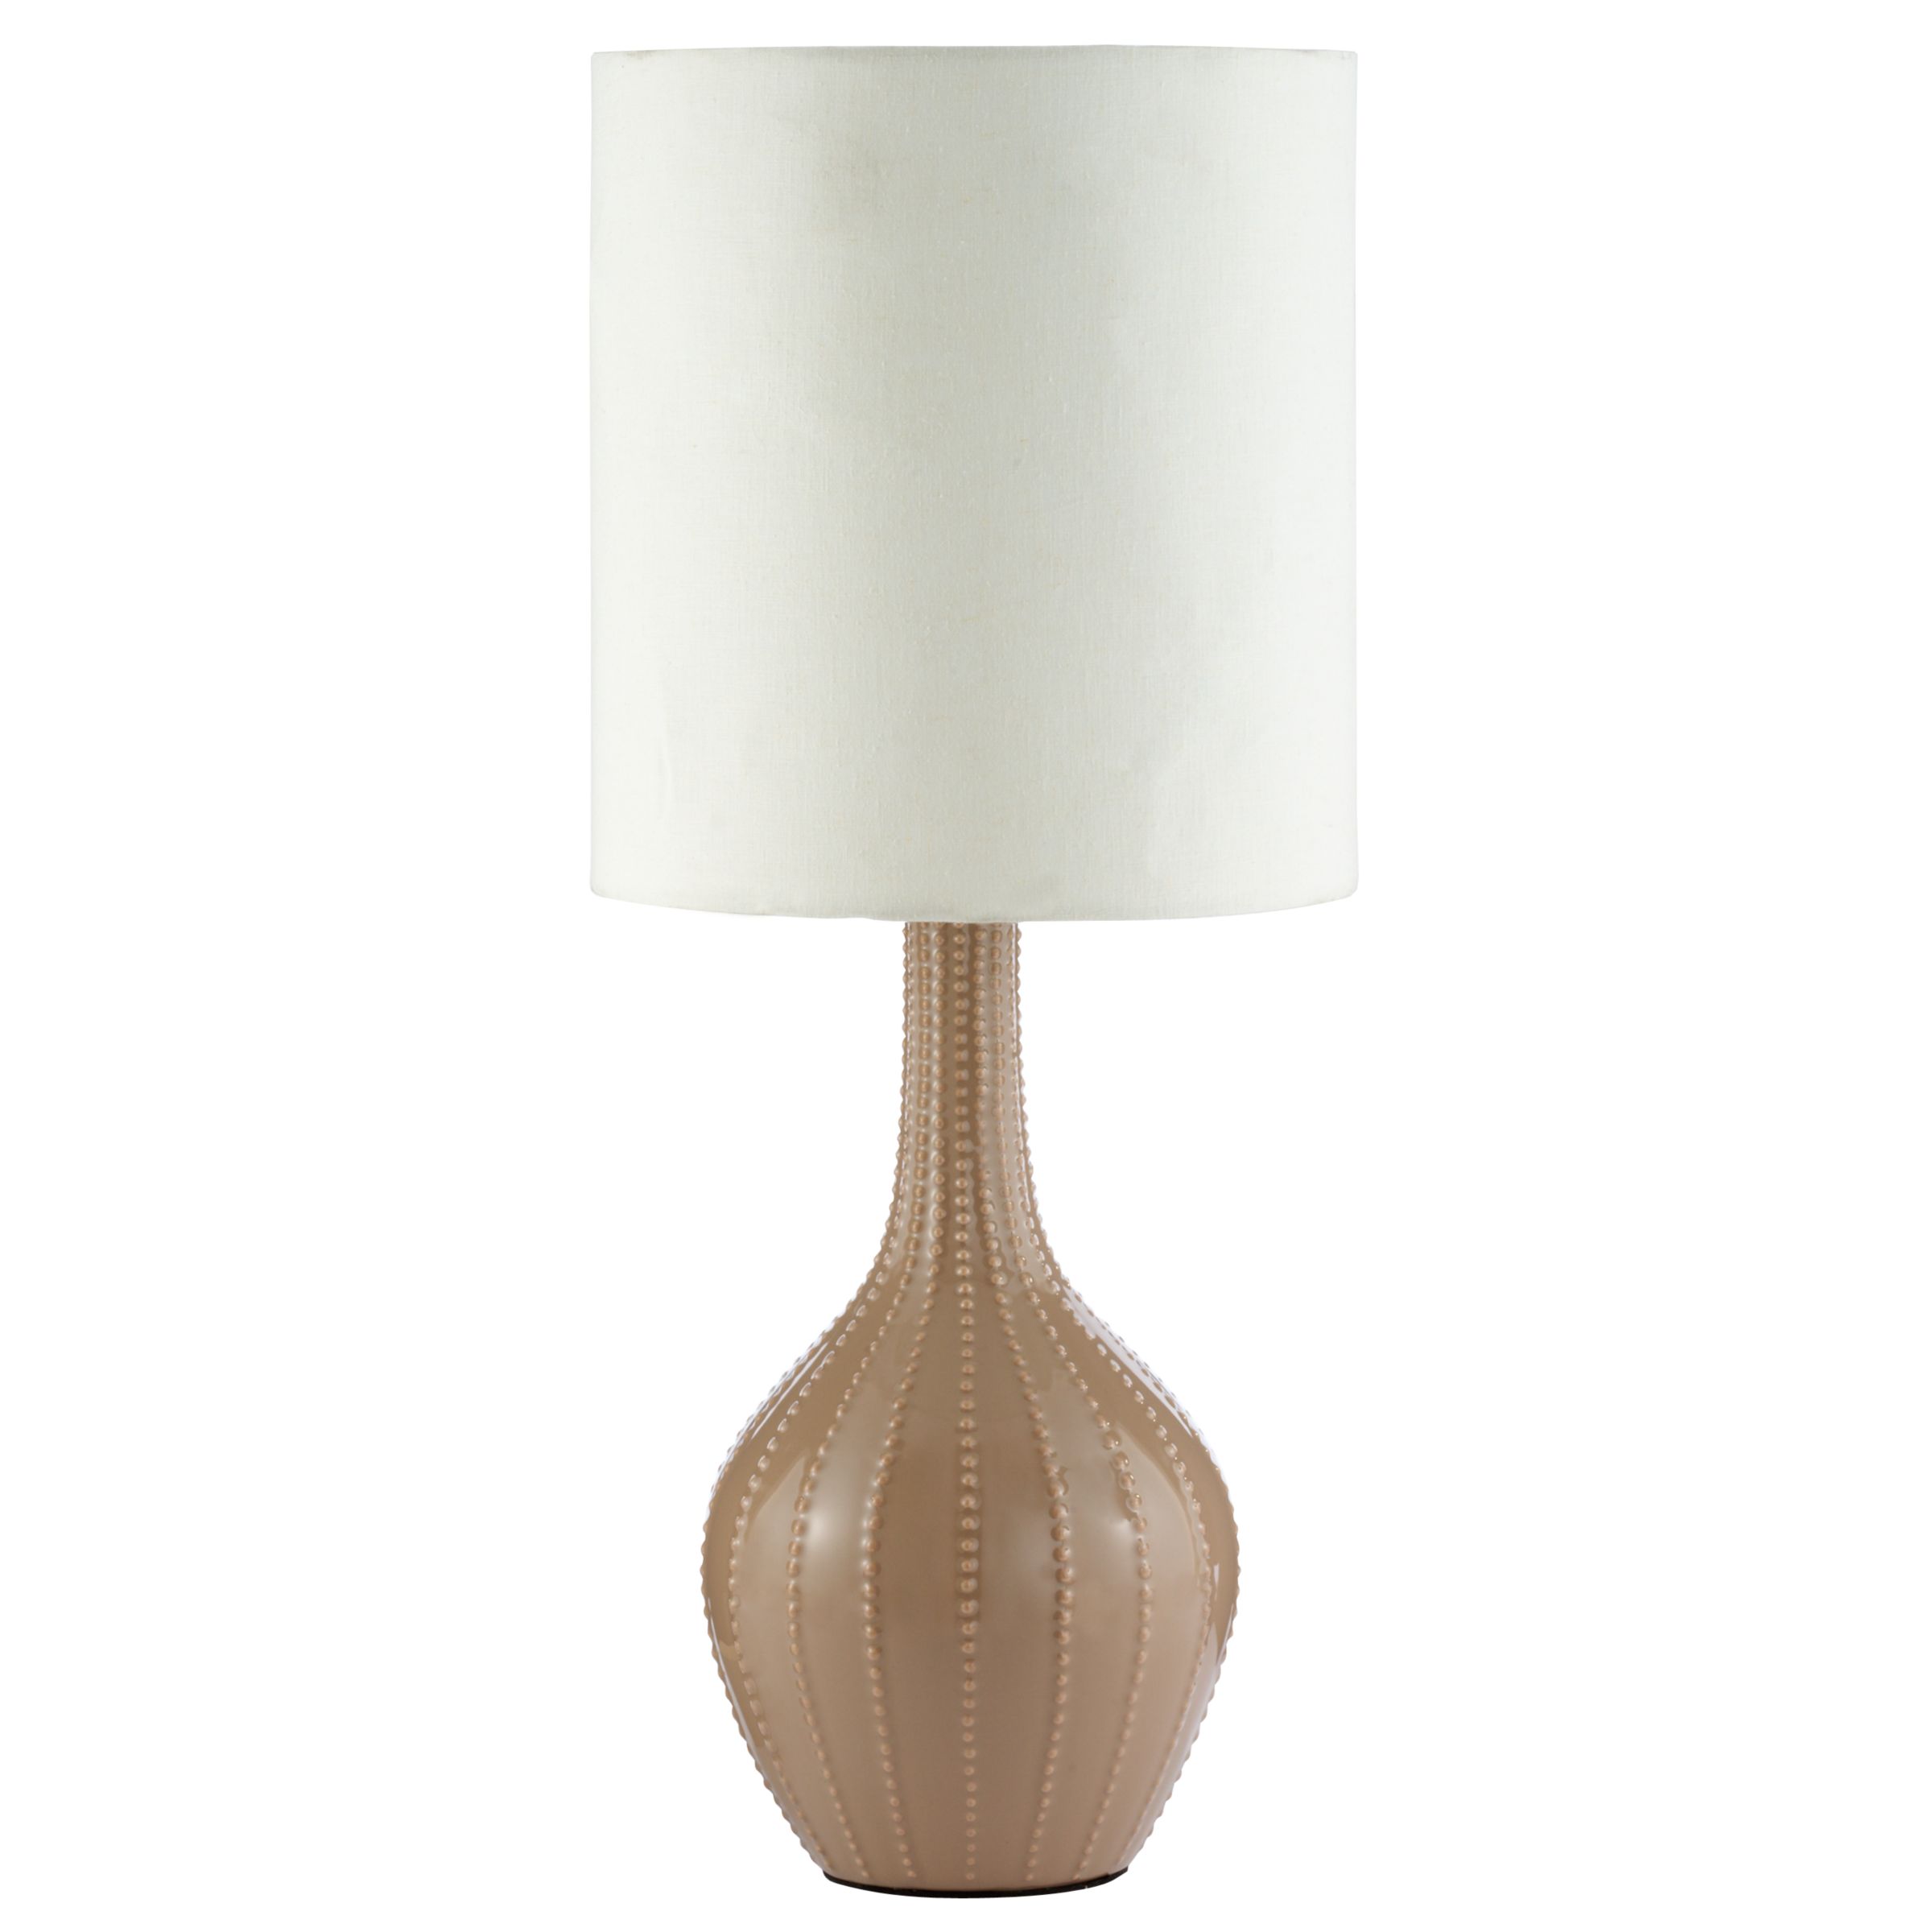 John Lewis Olivia Table Lamp